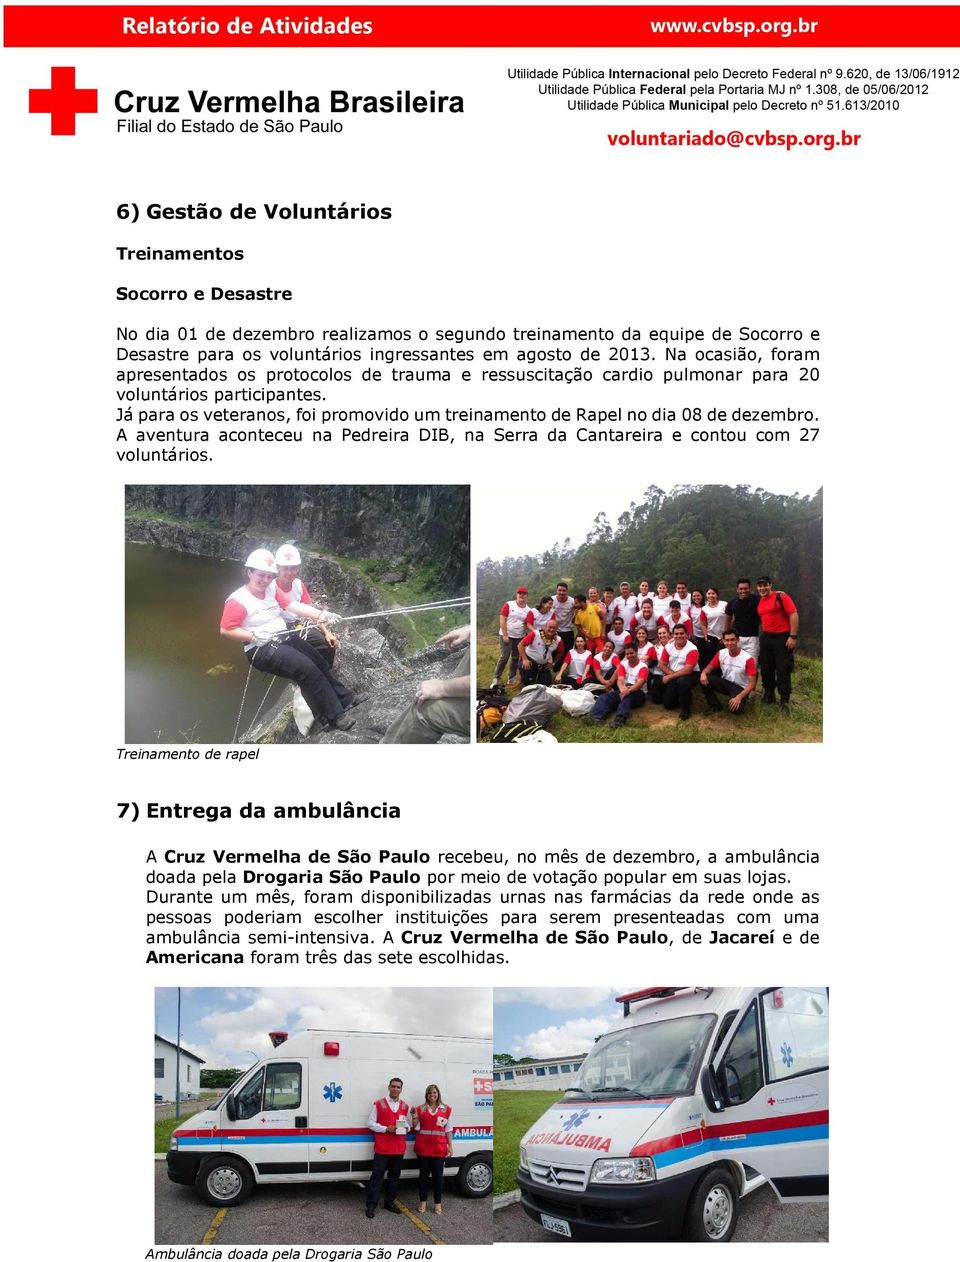 Já para os veteranos, foi promovido um treinamento de Rapel no dia 08 de dezembro. A aventura aconteceu na Pedreira DIB, na Serra da Cantareira e contou com 27 voluntários.